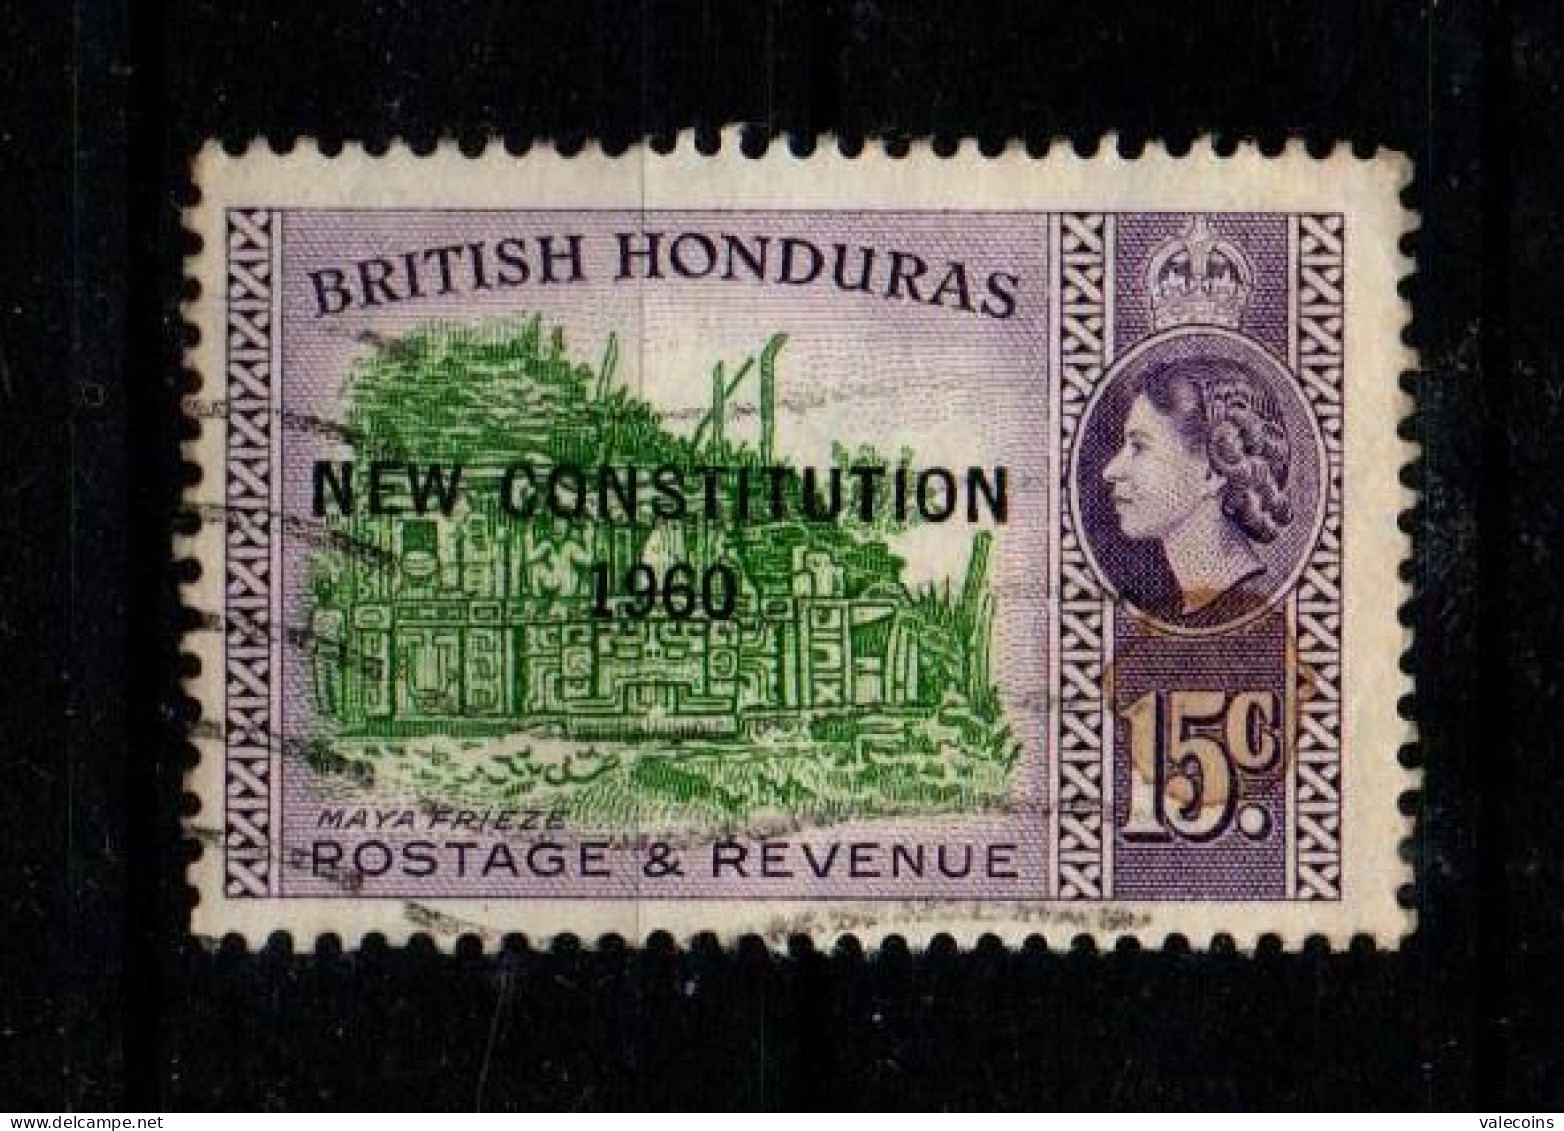 BRITISH HONDURAS (BELIZE) - 1961 - 15 Cent - New Constitution 1960 - Queen Elizabewth II - Used Stamp         MyRef:L - Honduras Britannique (...-1970)